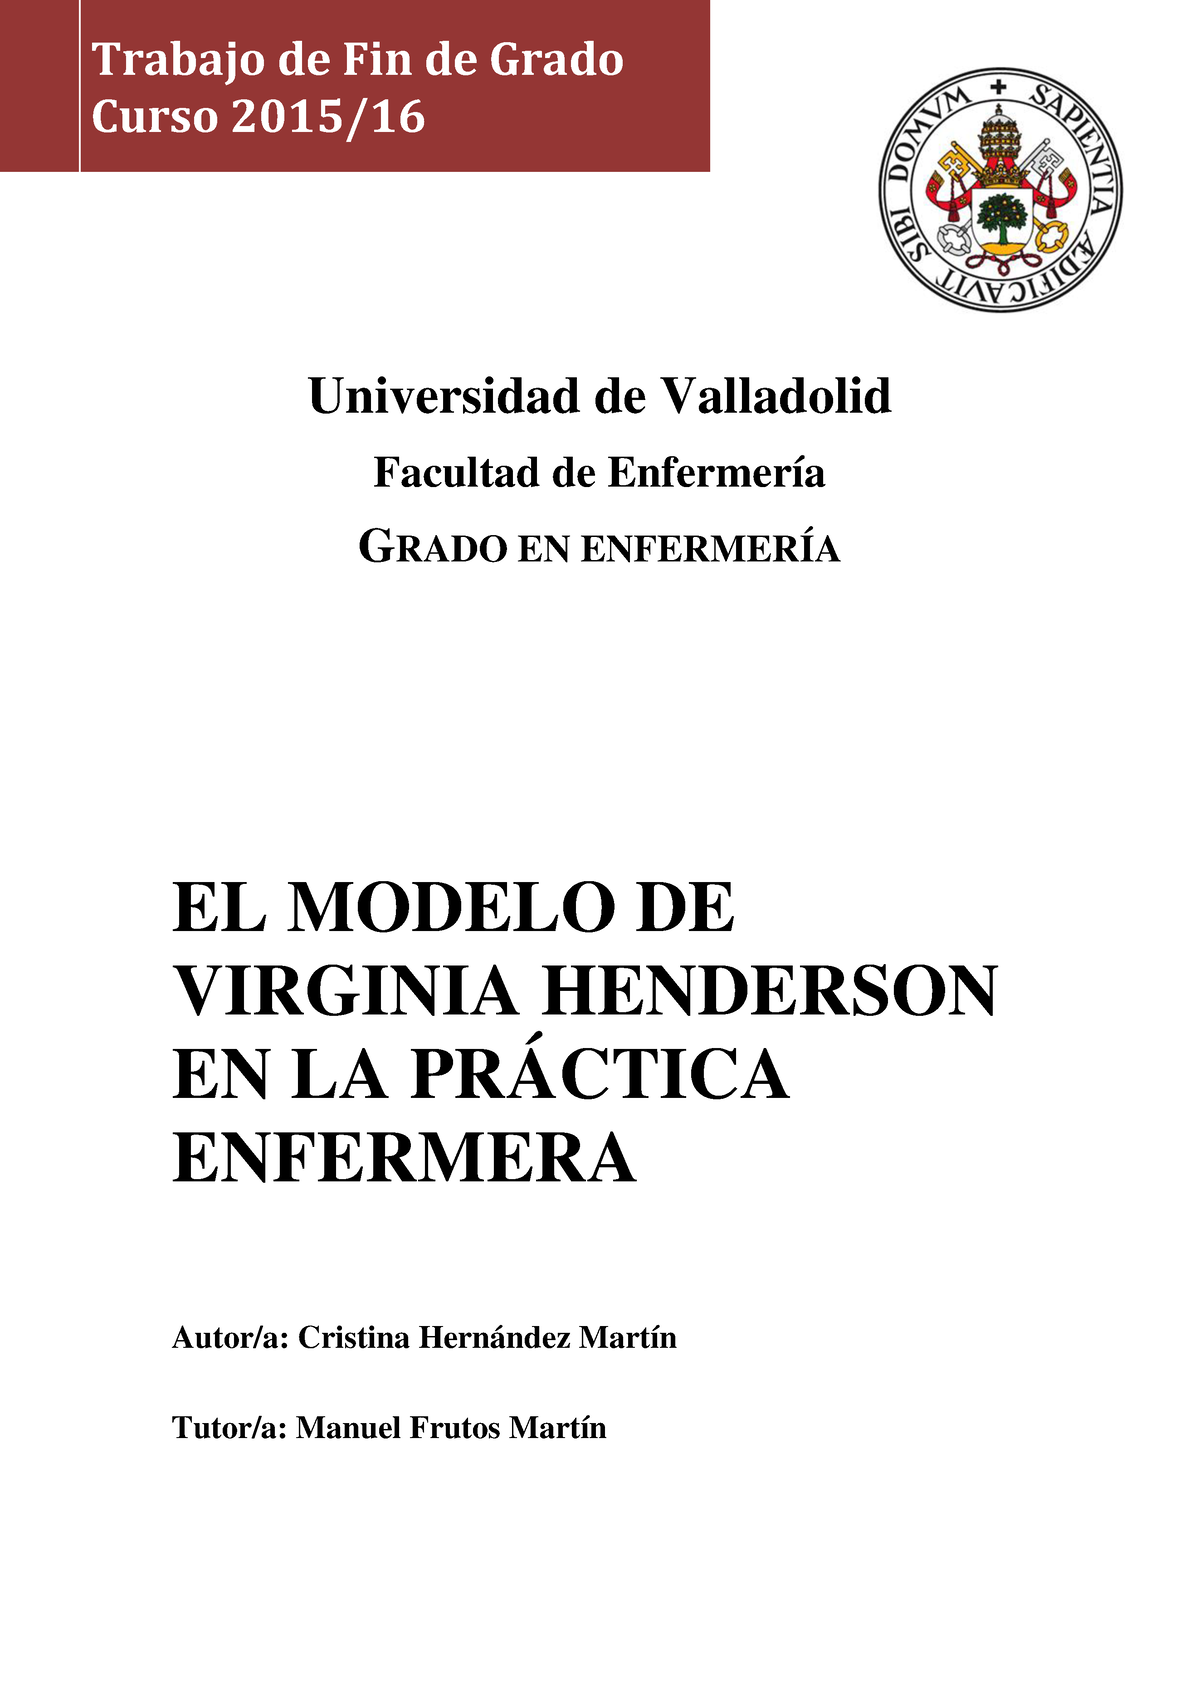 Modelo de V. Henderson - Para ella, todas las personas tienen capacidades y  recursos para lograr la - Studocu